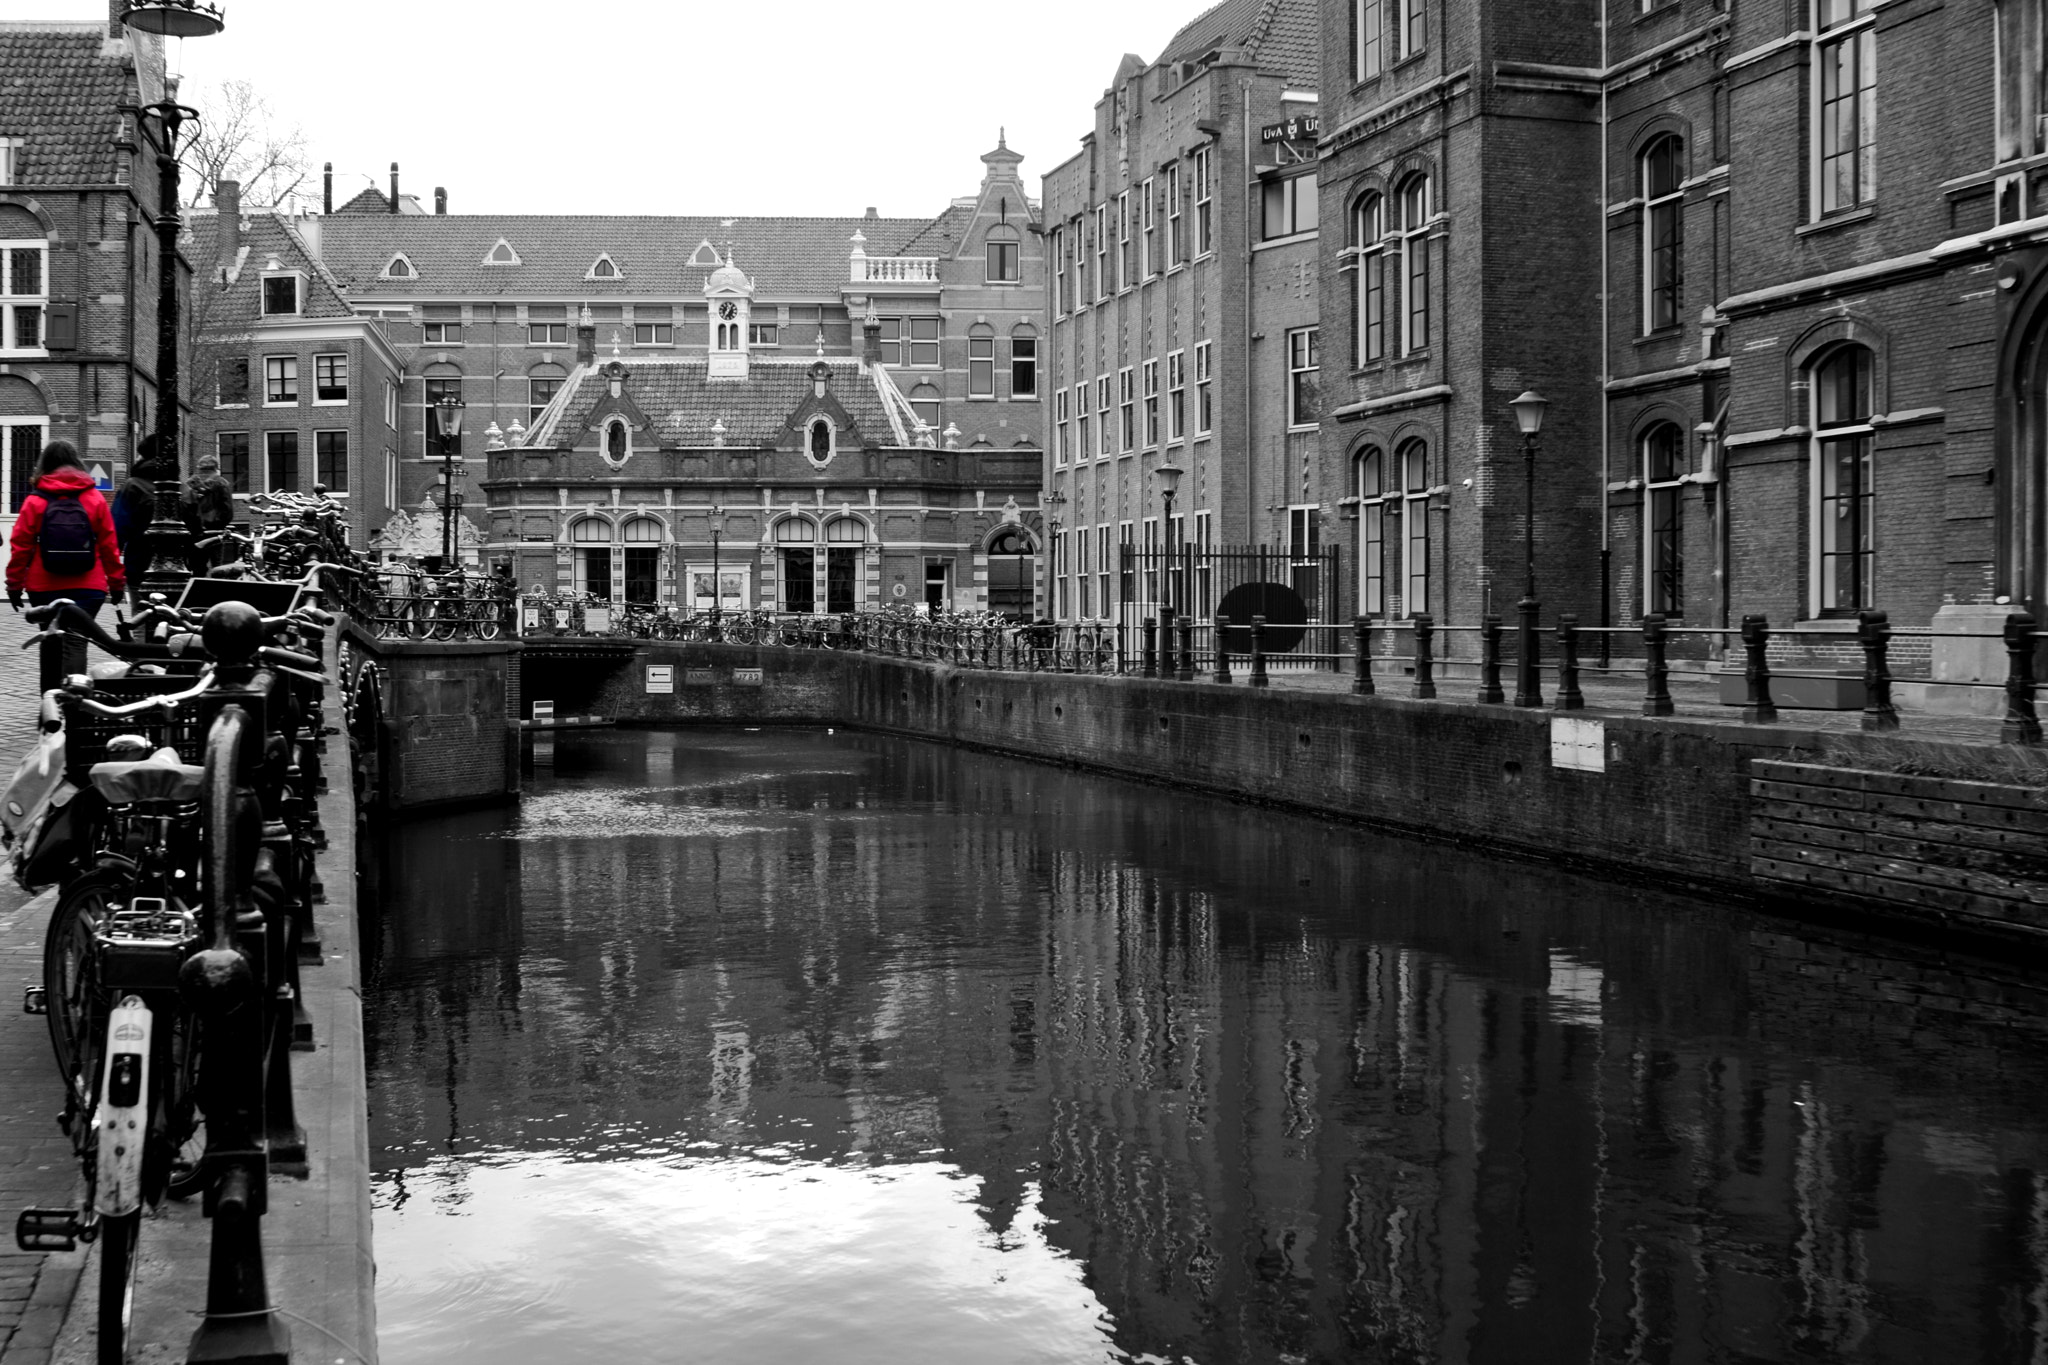 Nikon D5300 + AF Nikkor 24mm f/2.8 sample photo. Amsterdam university photography